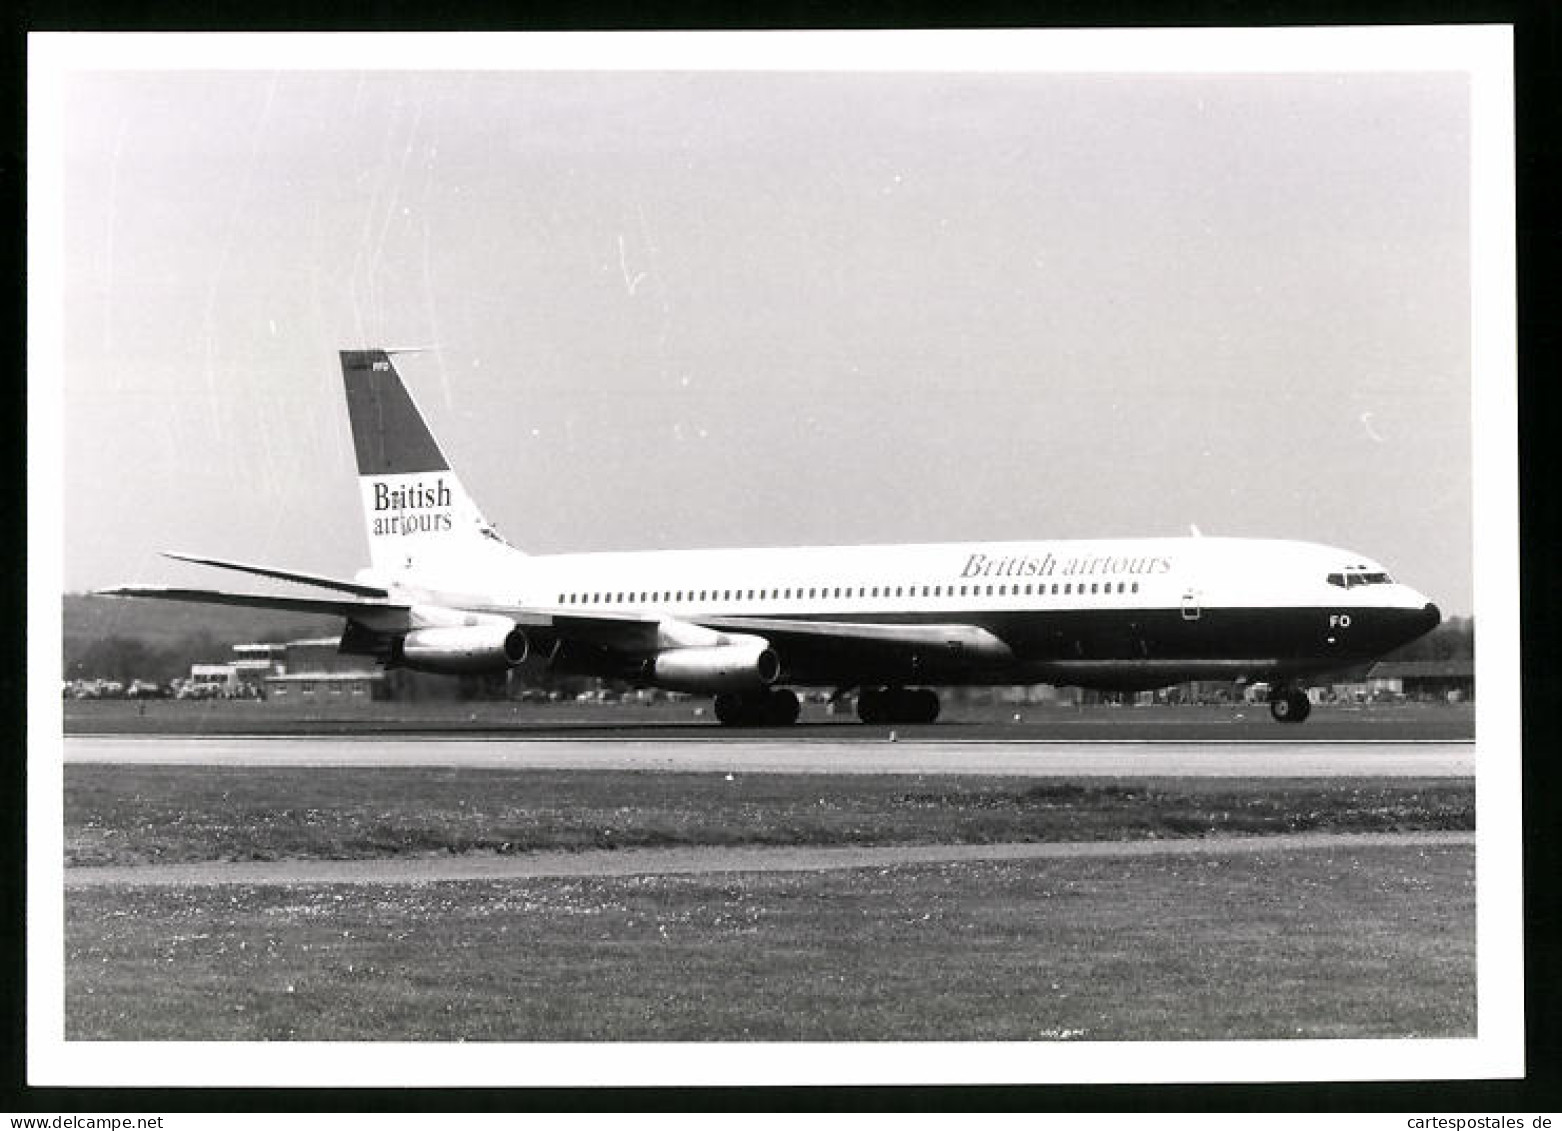 Fotografie Flugzeug Boeing 707, Passagierflugzeug British Airways  - Luchtvaart